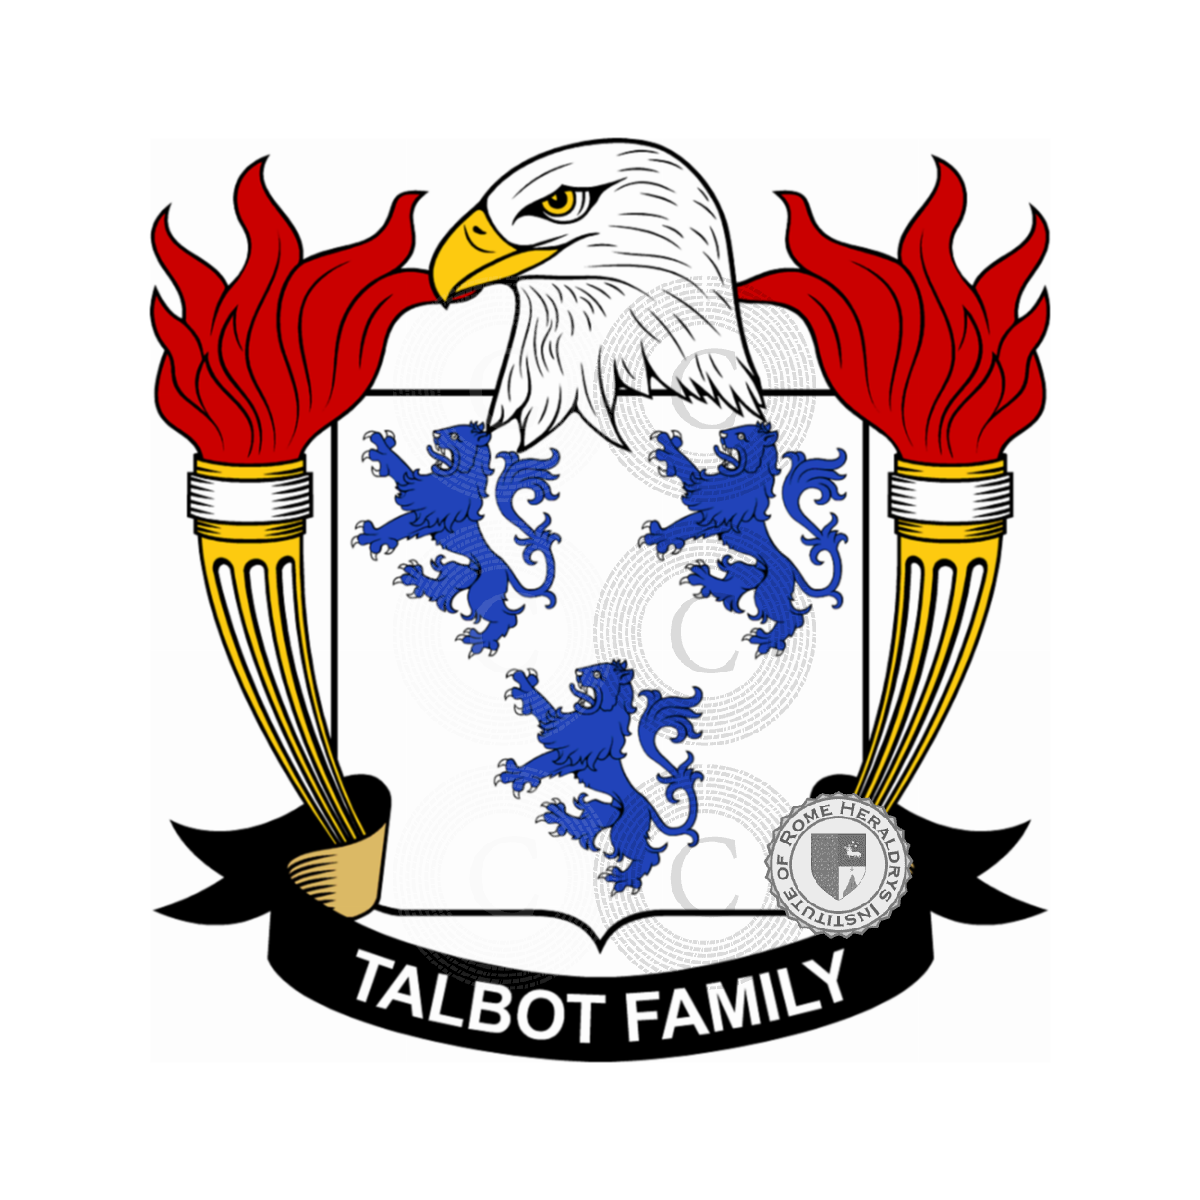 Stemma della famigliaTalbot, Talbot de Carton